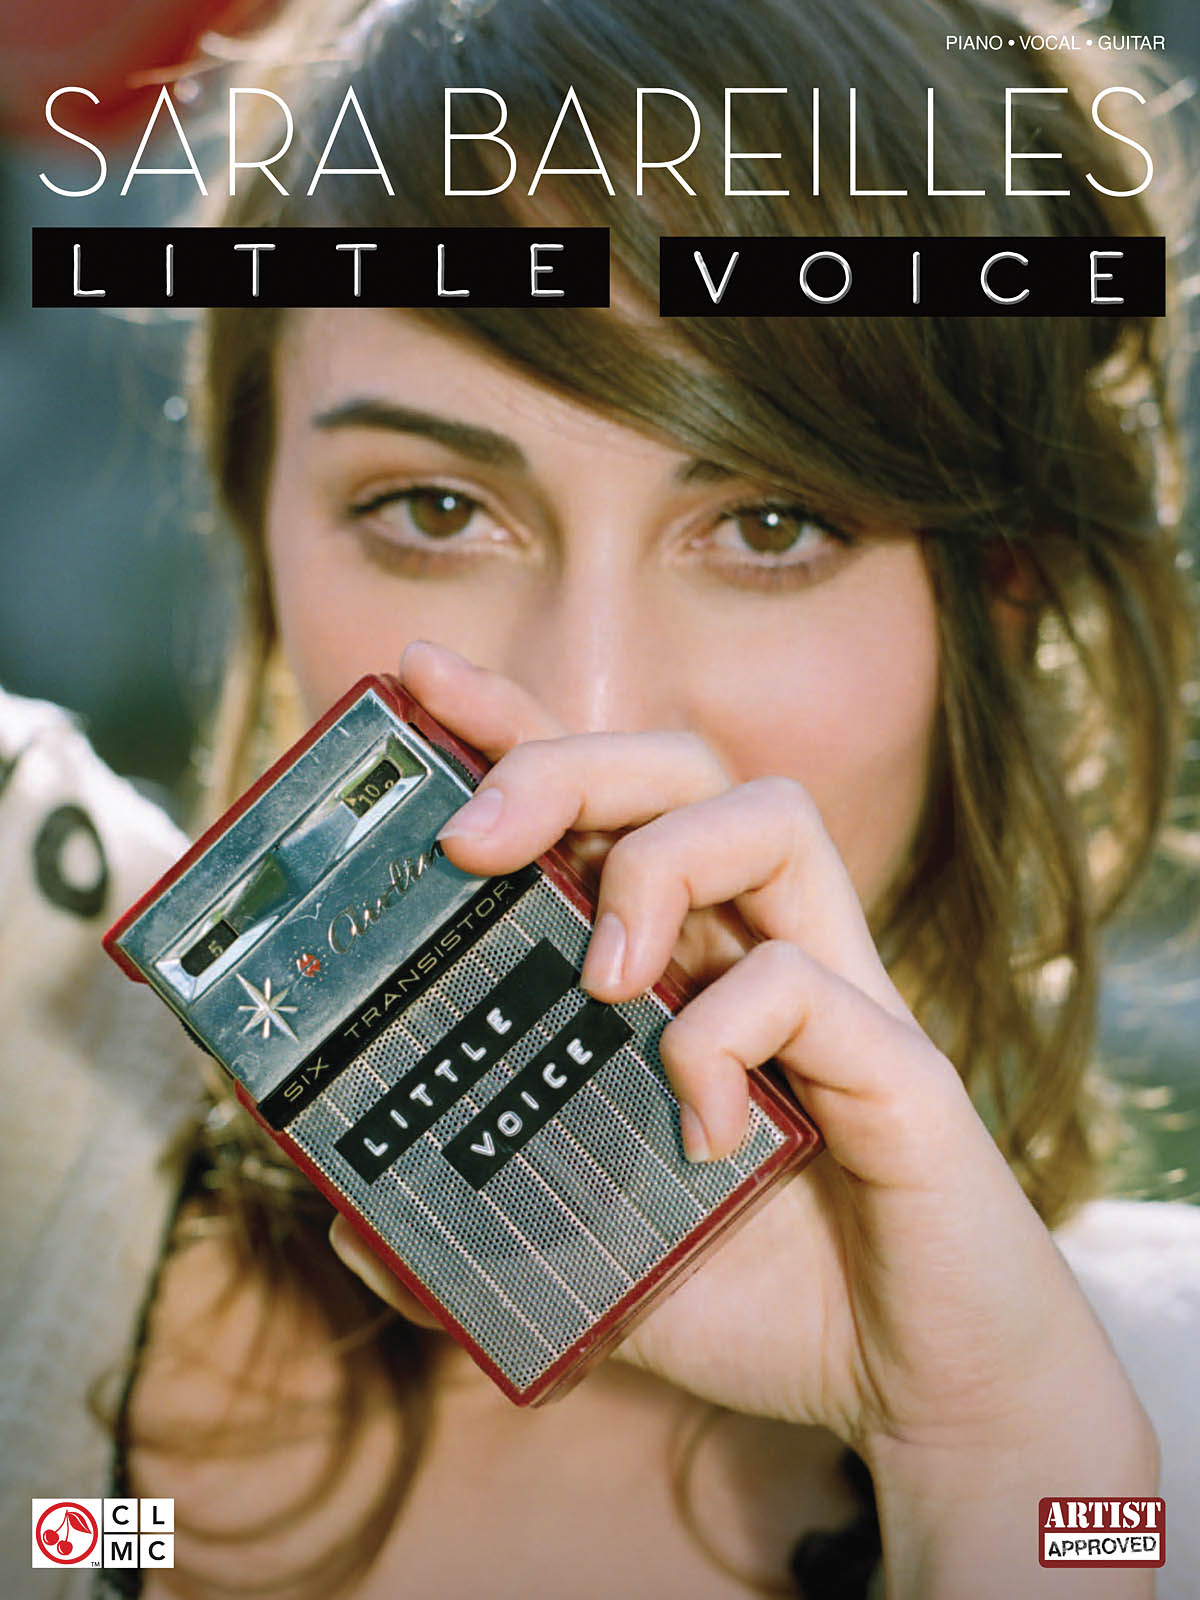 Sara Bareilles: Sara Bareilles - Little Voice: Piano  Vocal and Guitar: Album